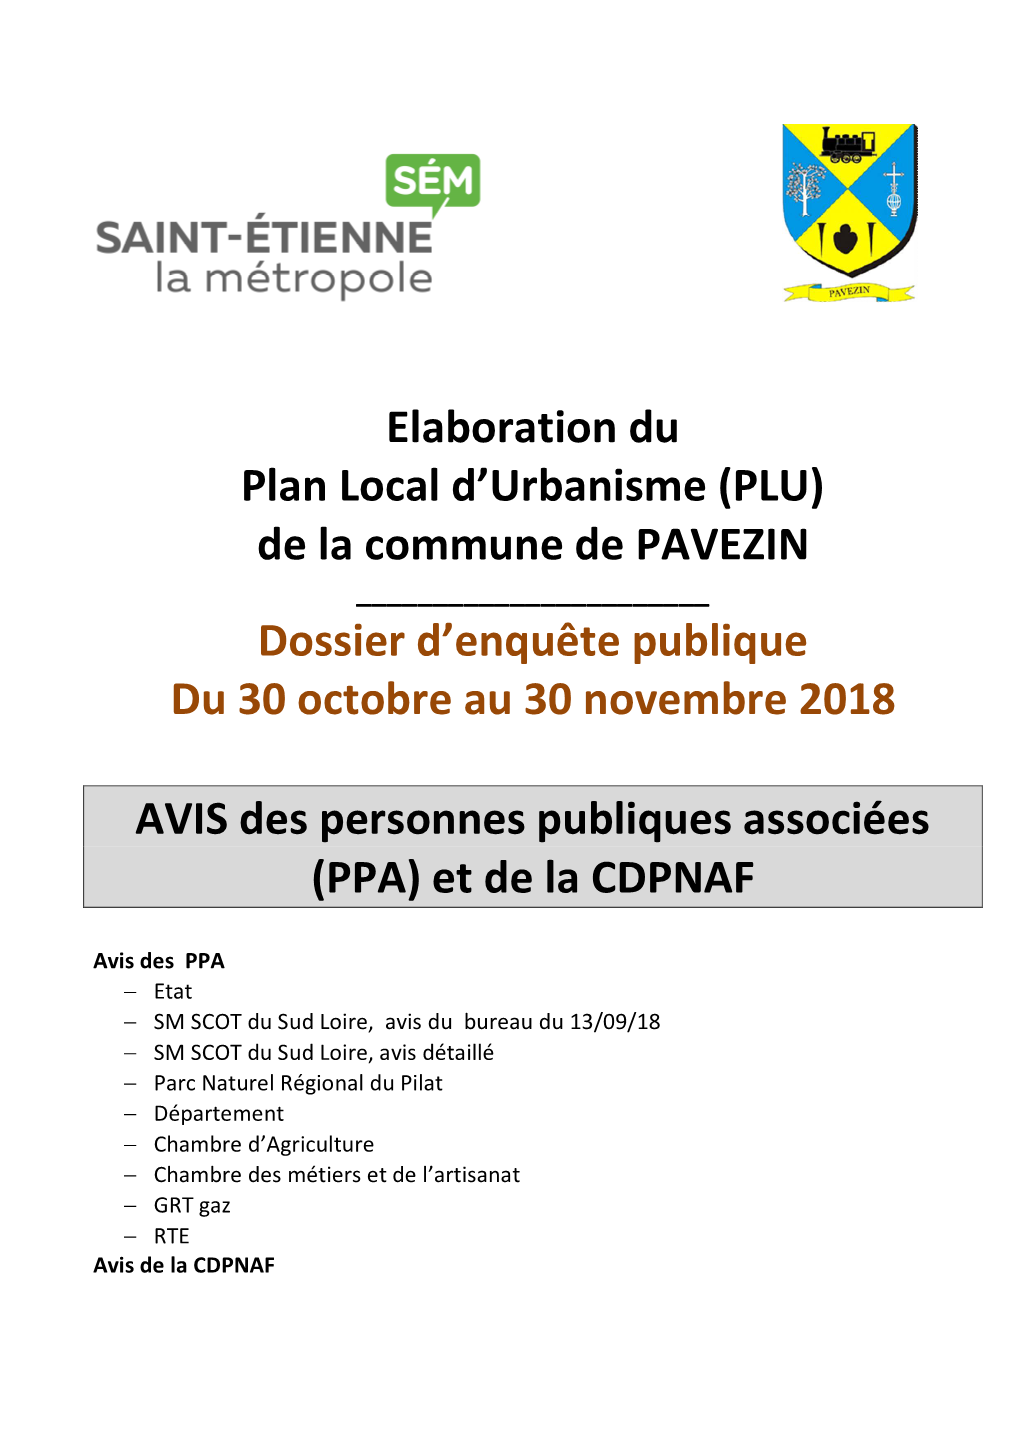 PLU) De La Commune De PAVEZIN ______Dossier D’Enquête Publique Du 30 Octobre Au 30 Novembre 2018